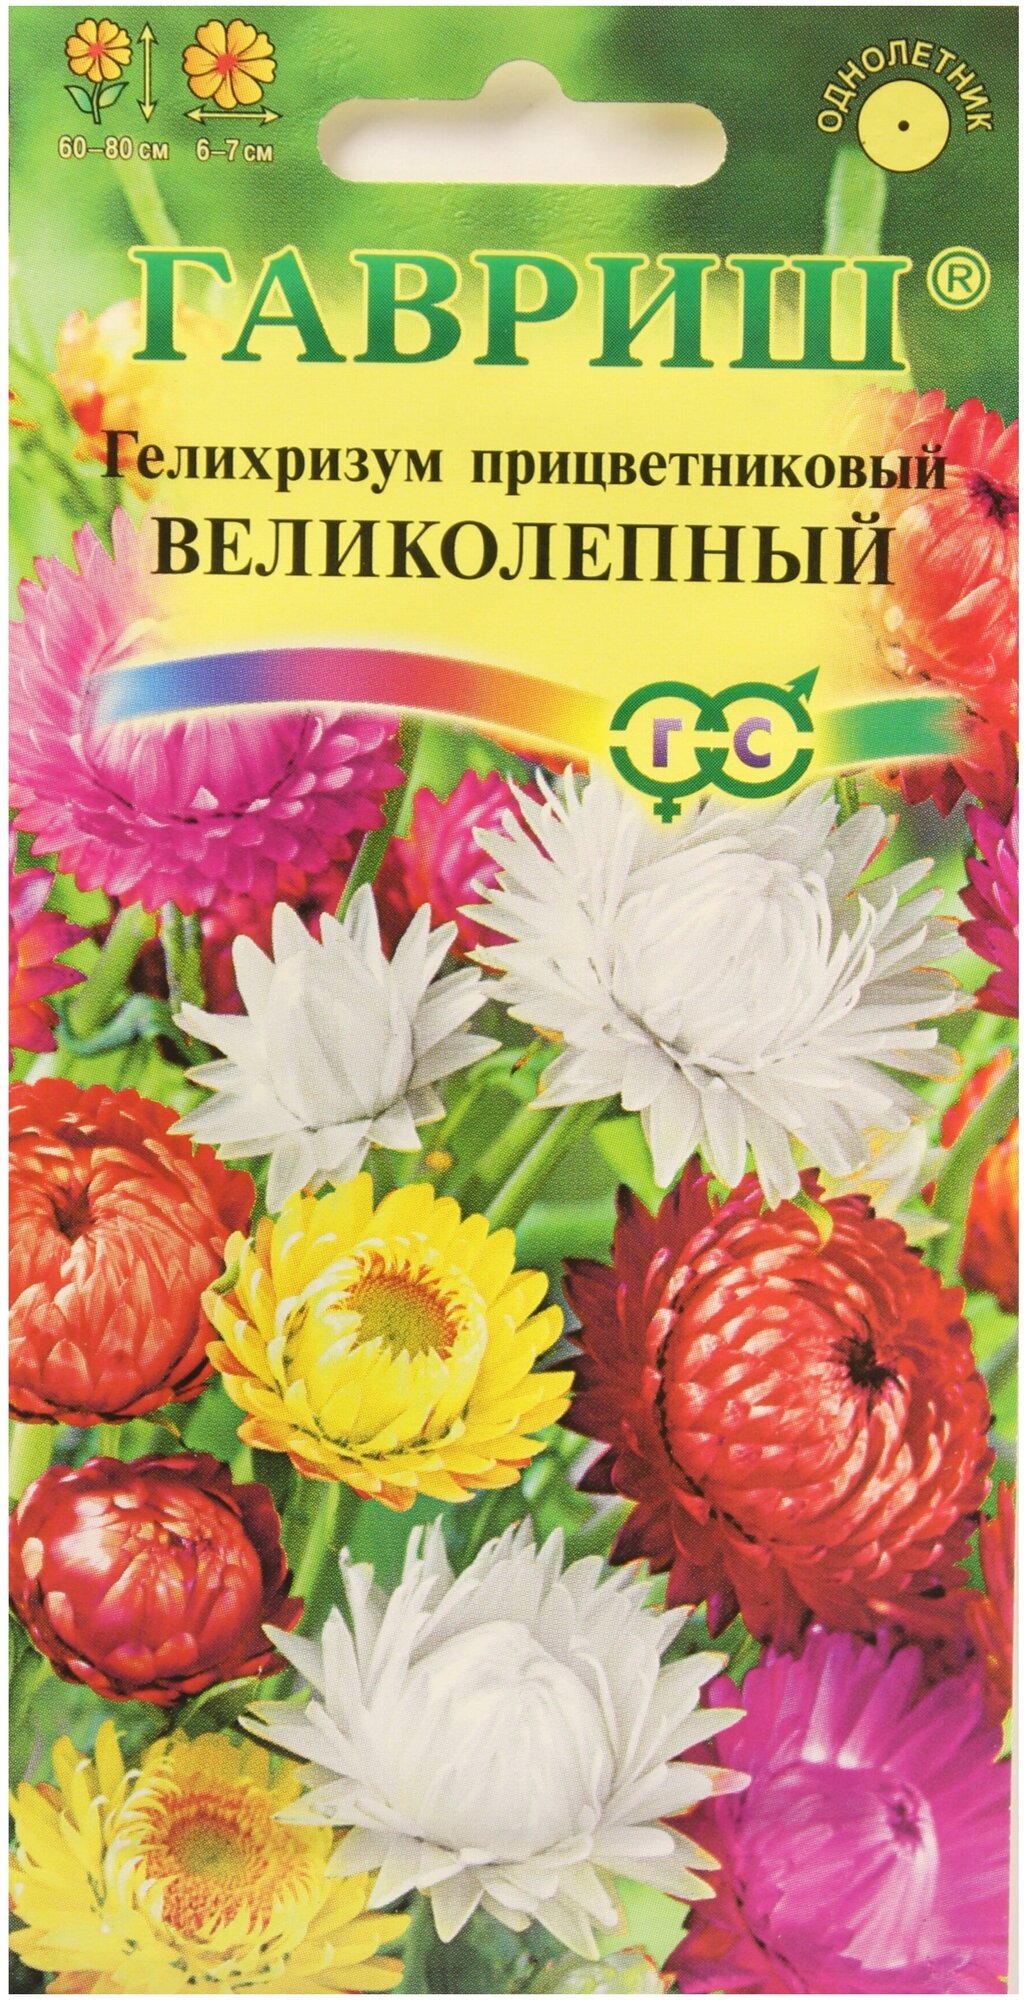 Гелихризум прицветковый Гавриш Великолепный семена